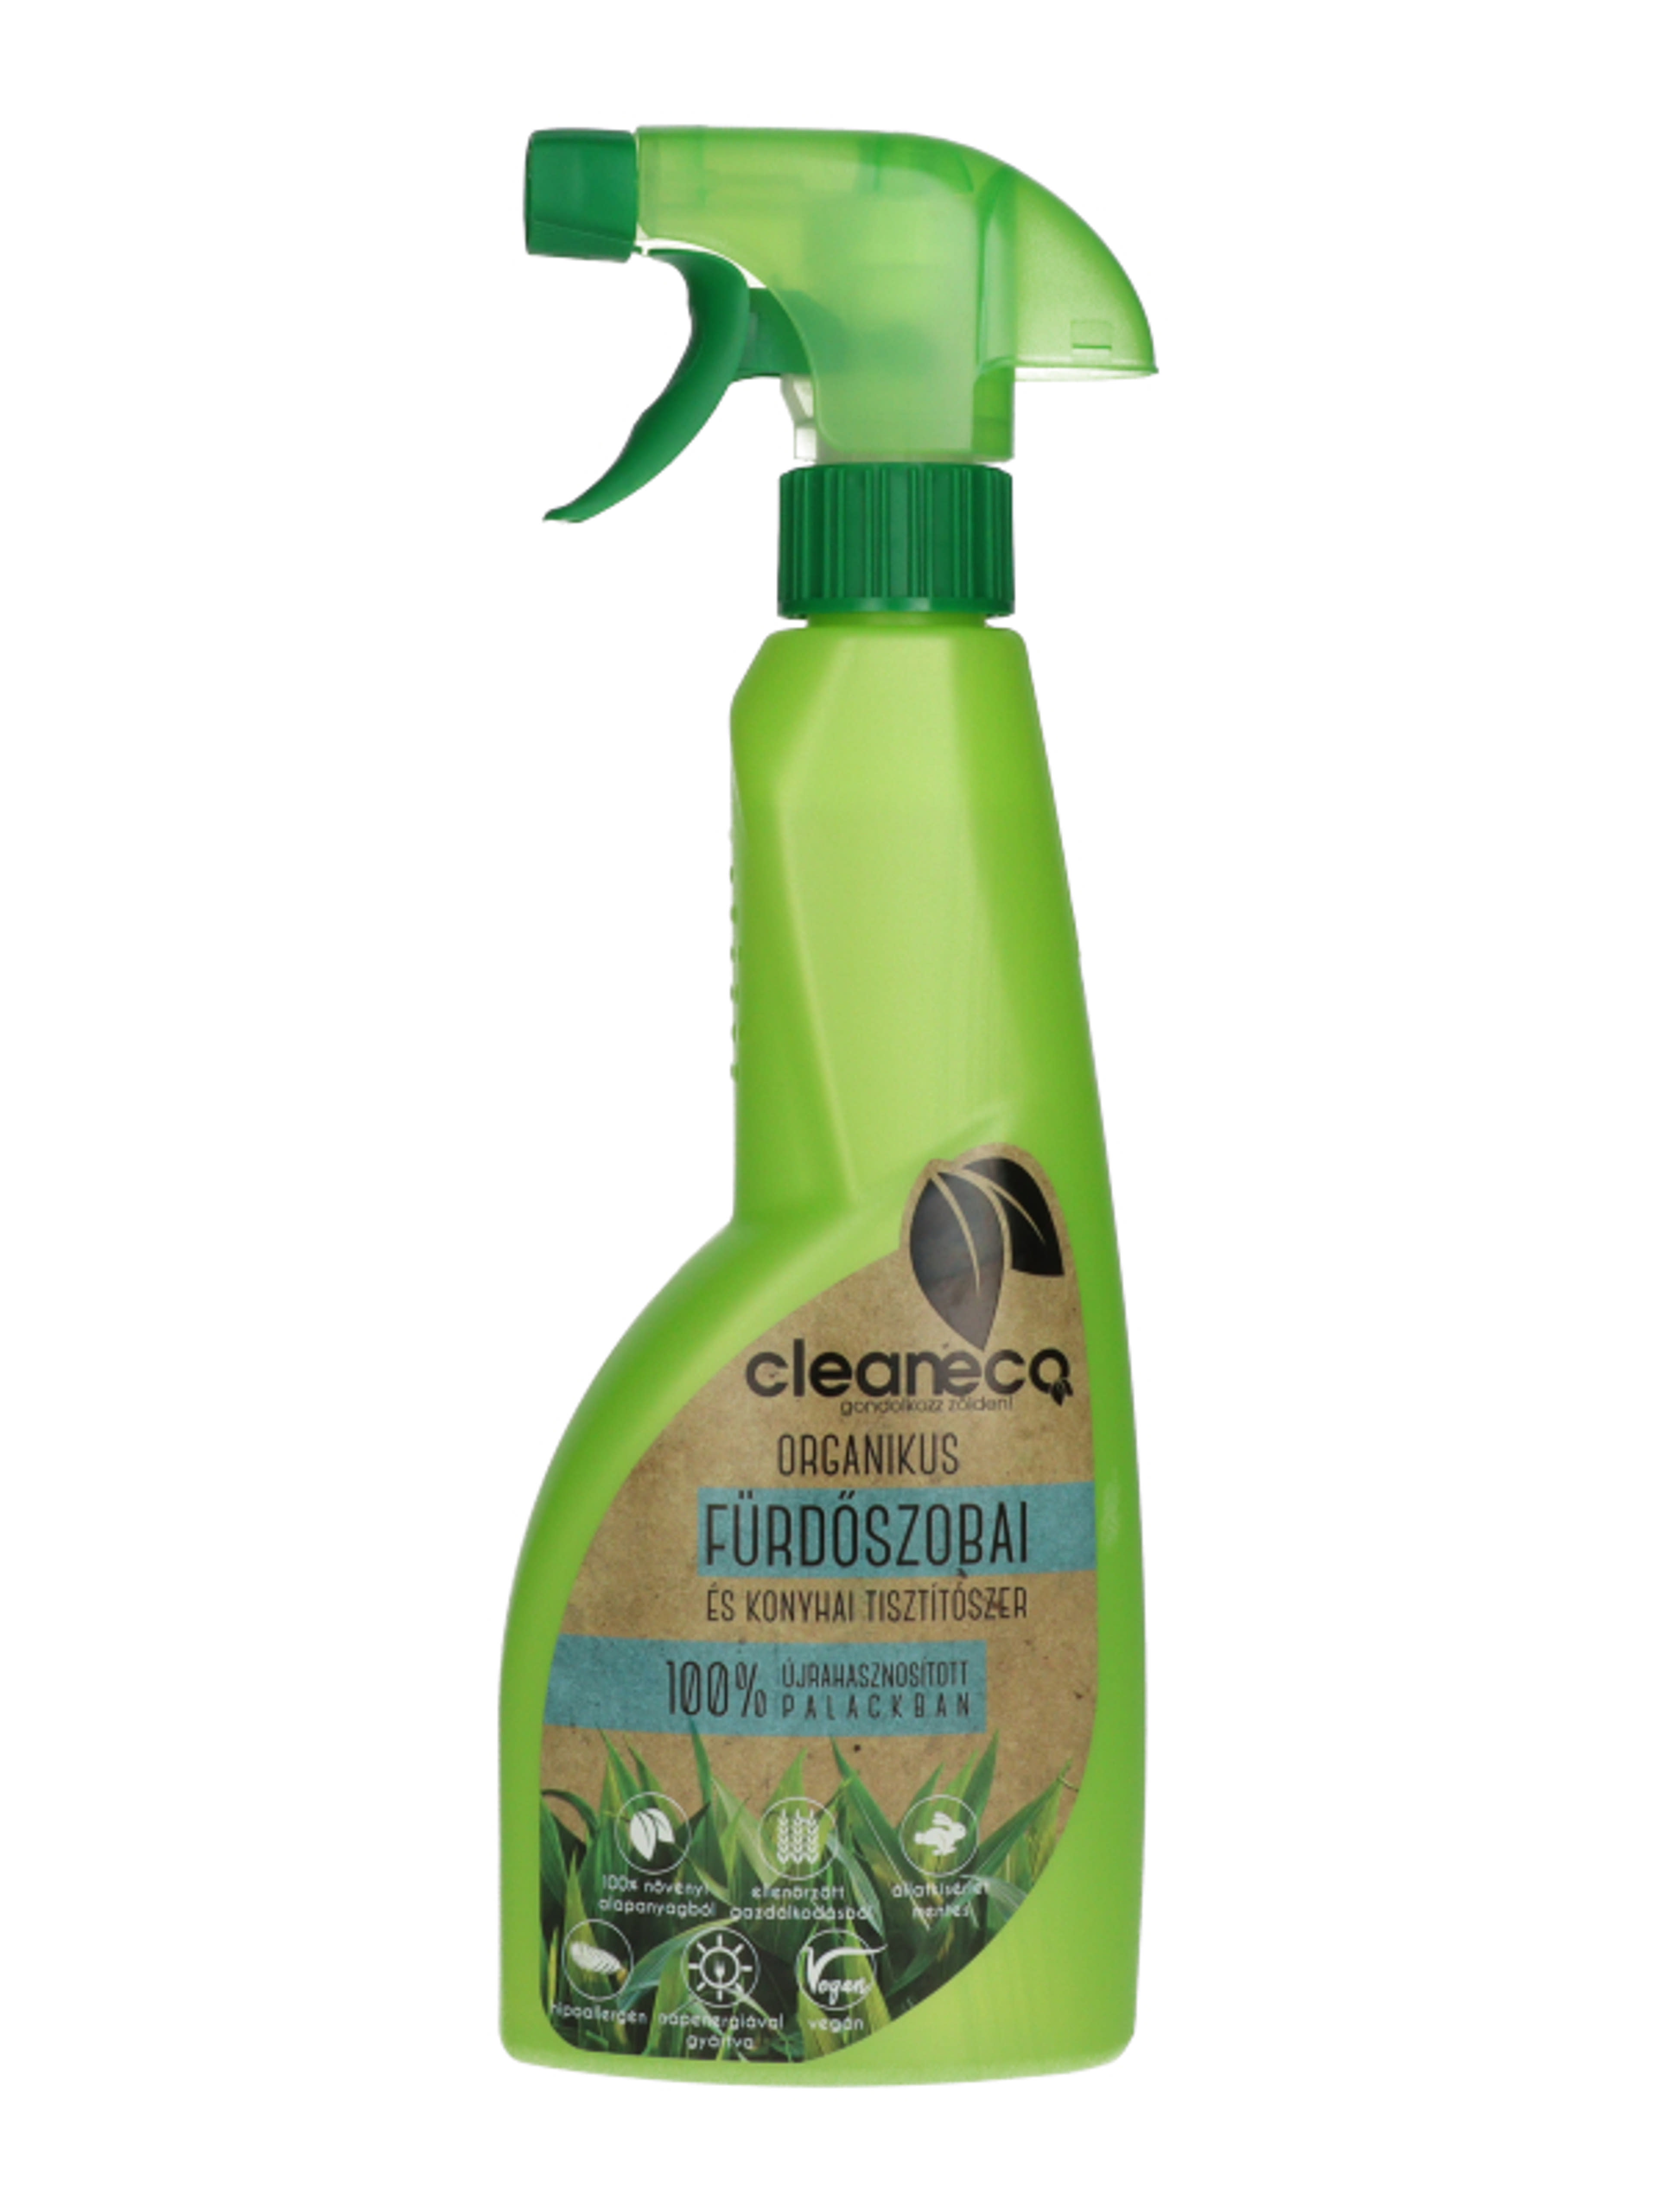 Cleaneco Organikus fürdőszobai és konyhai tisztítószer spray - 500 ml-2